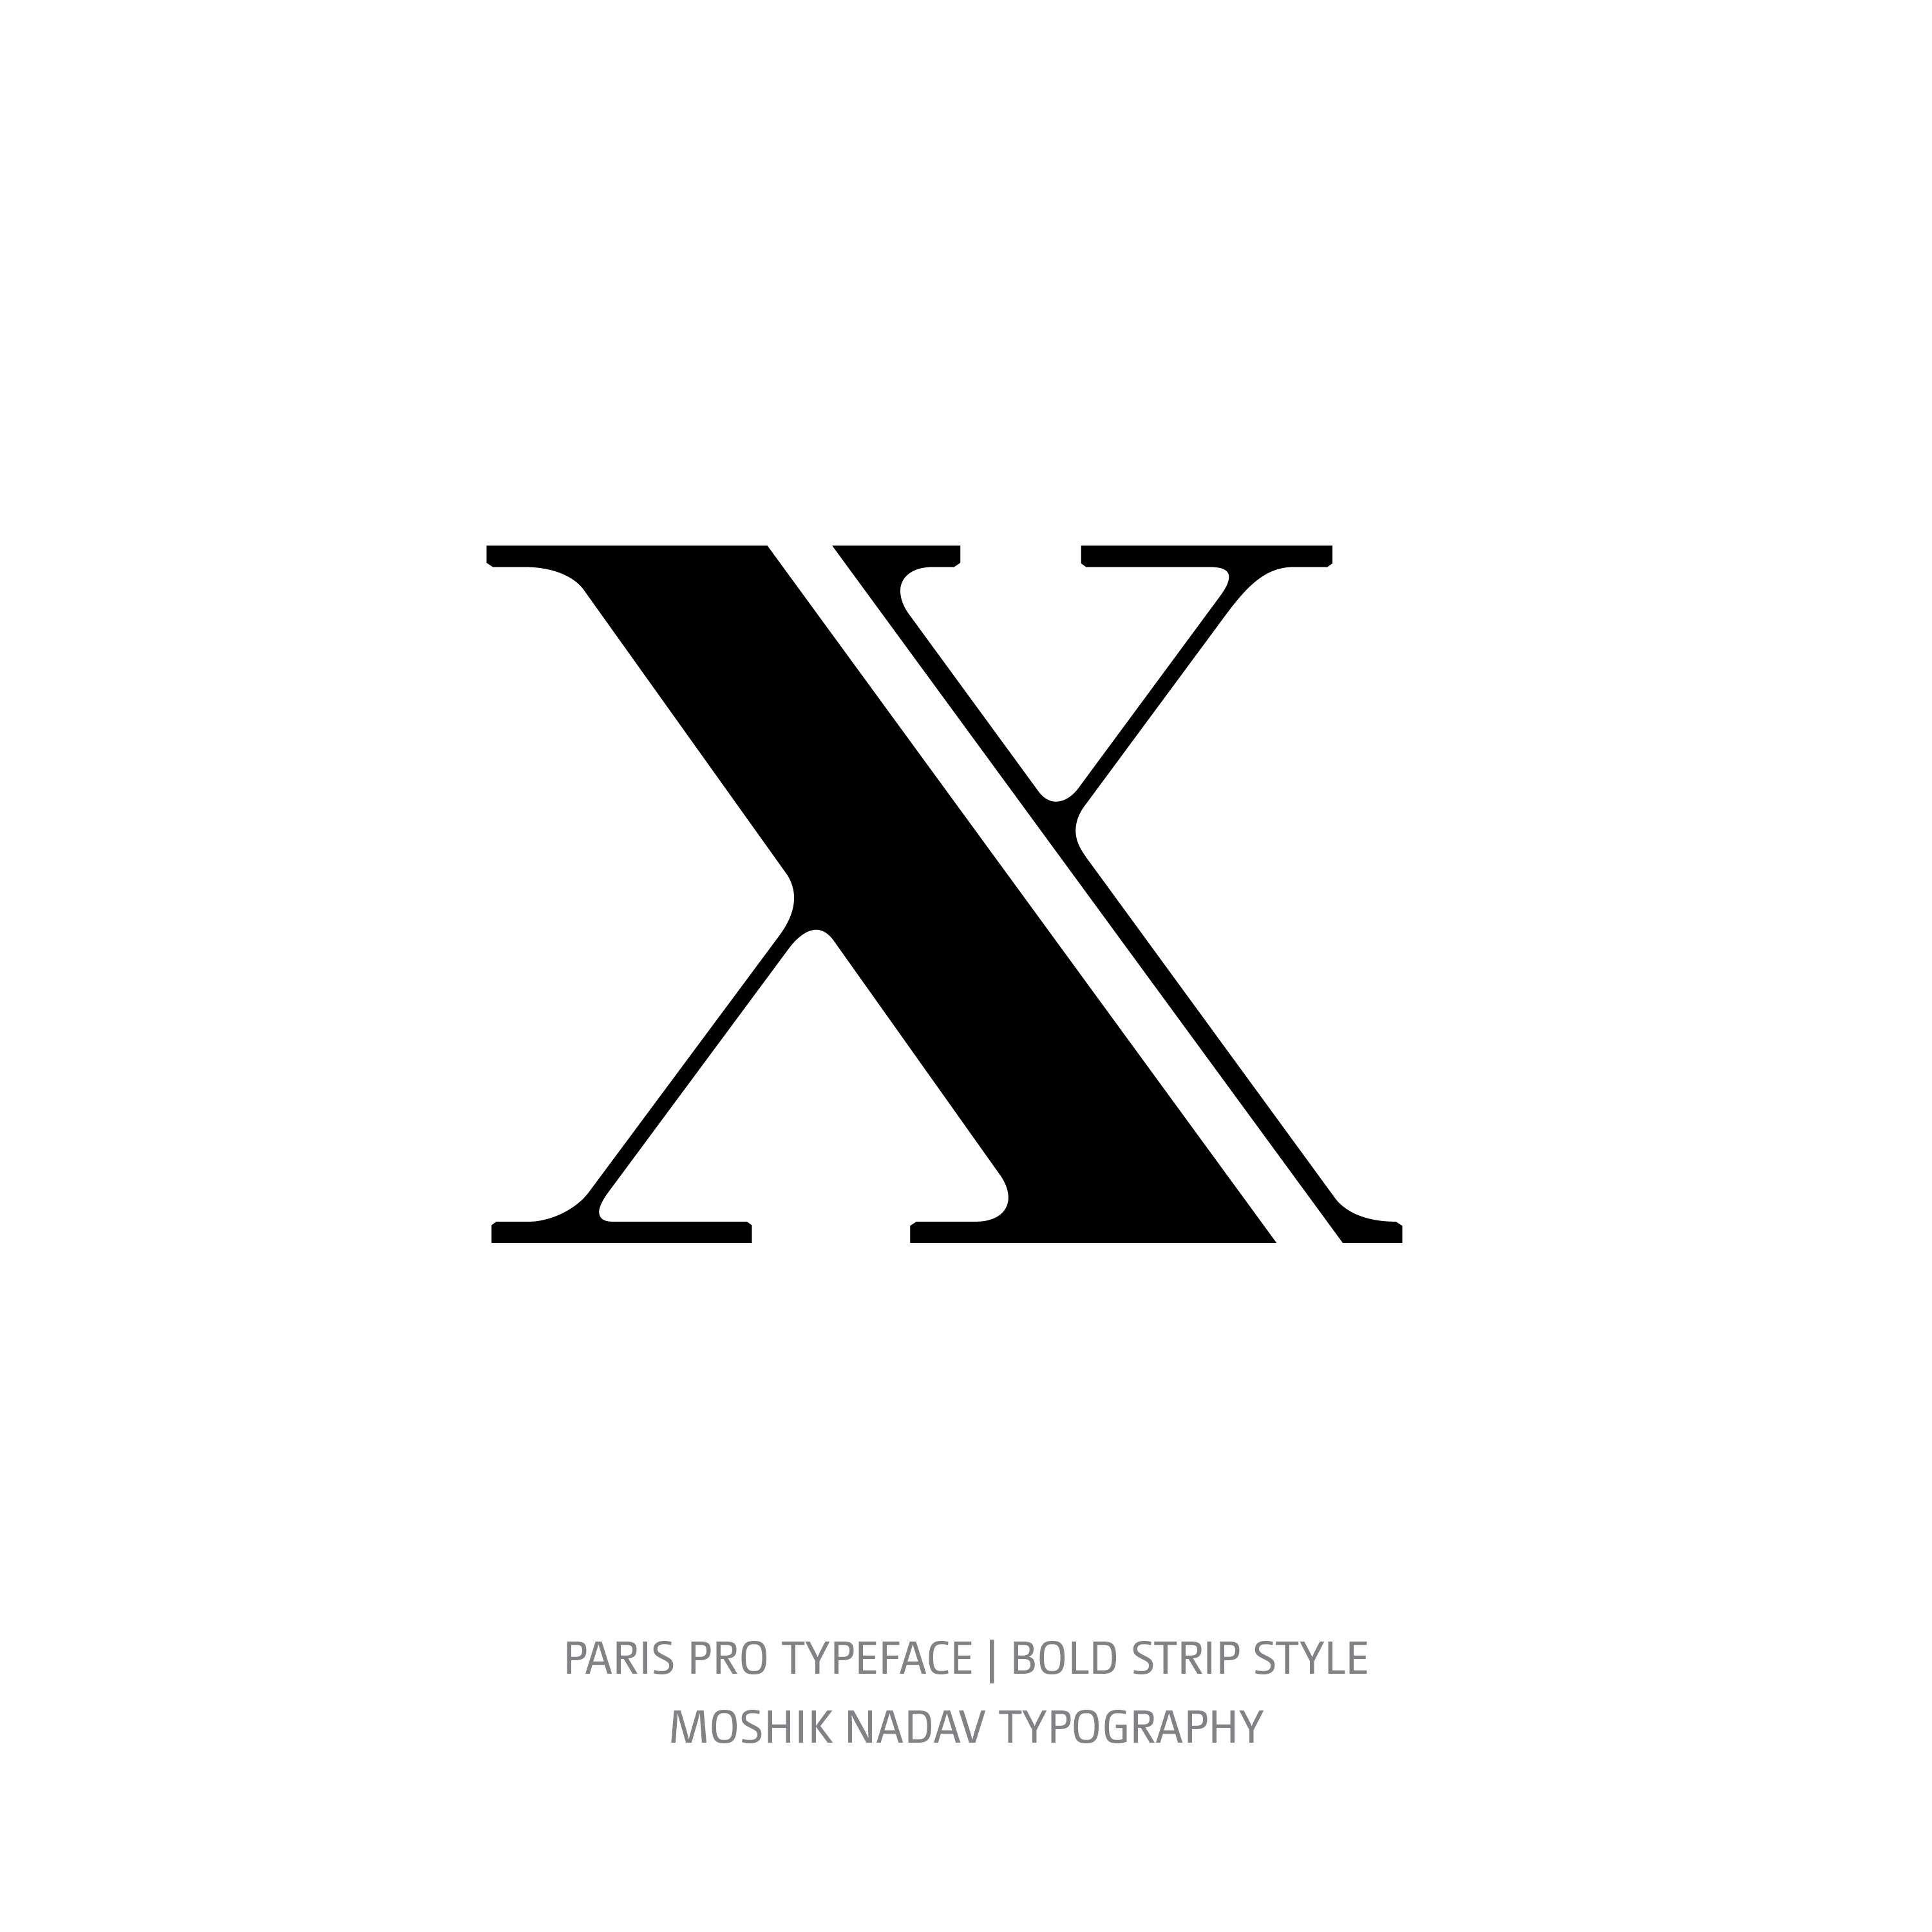 Paris Pro Typeface Bold Strip x